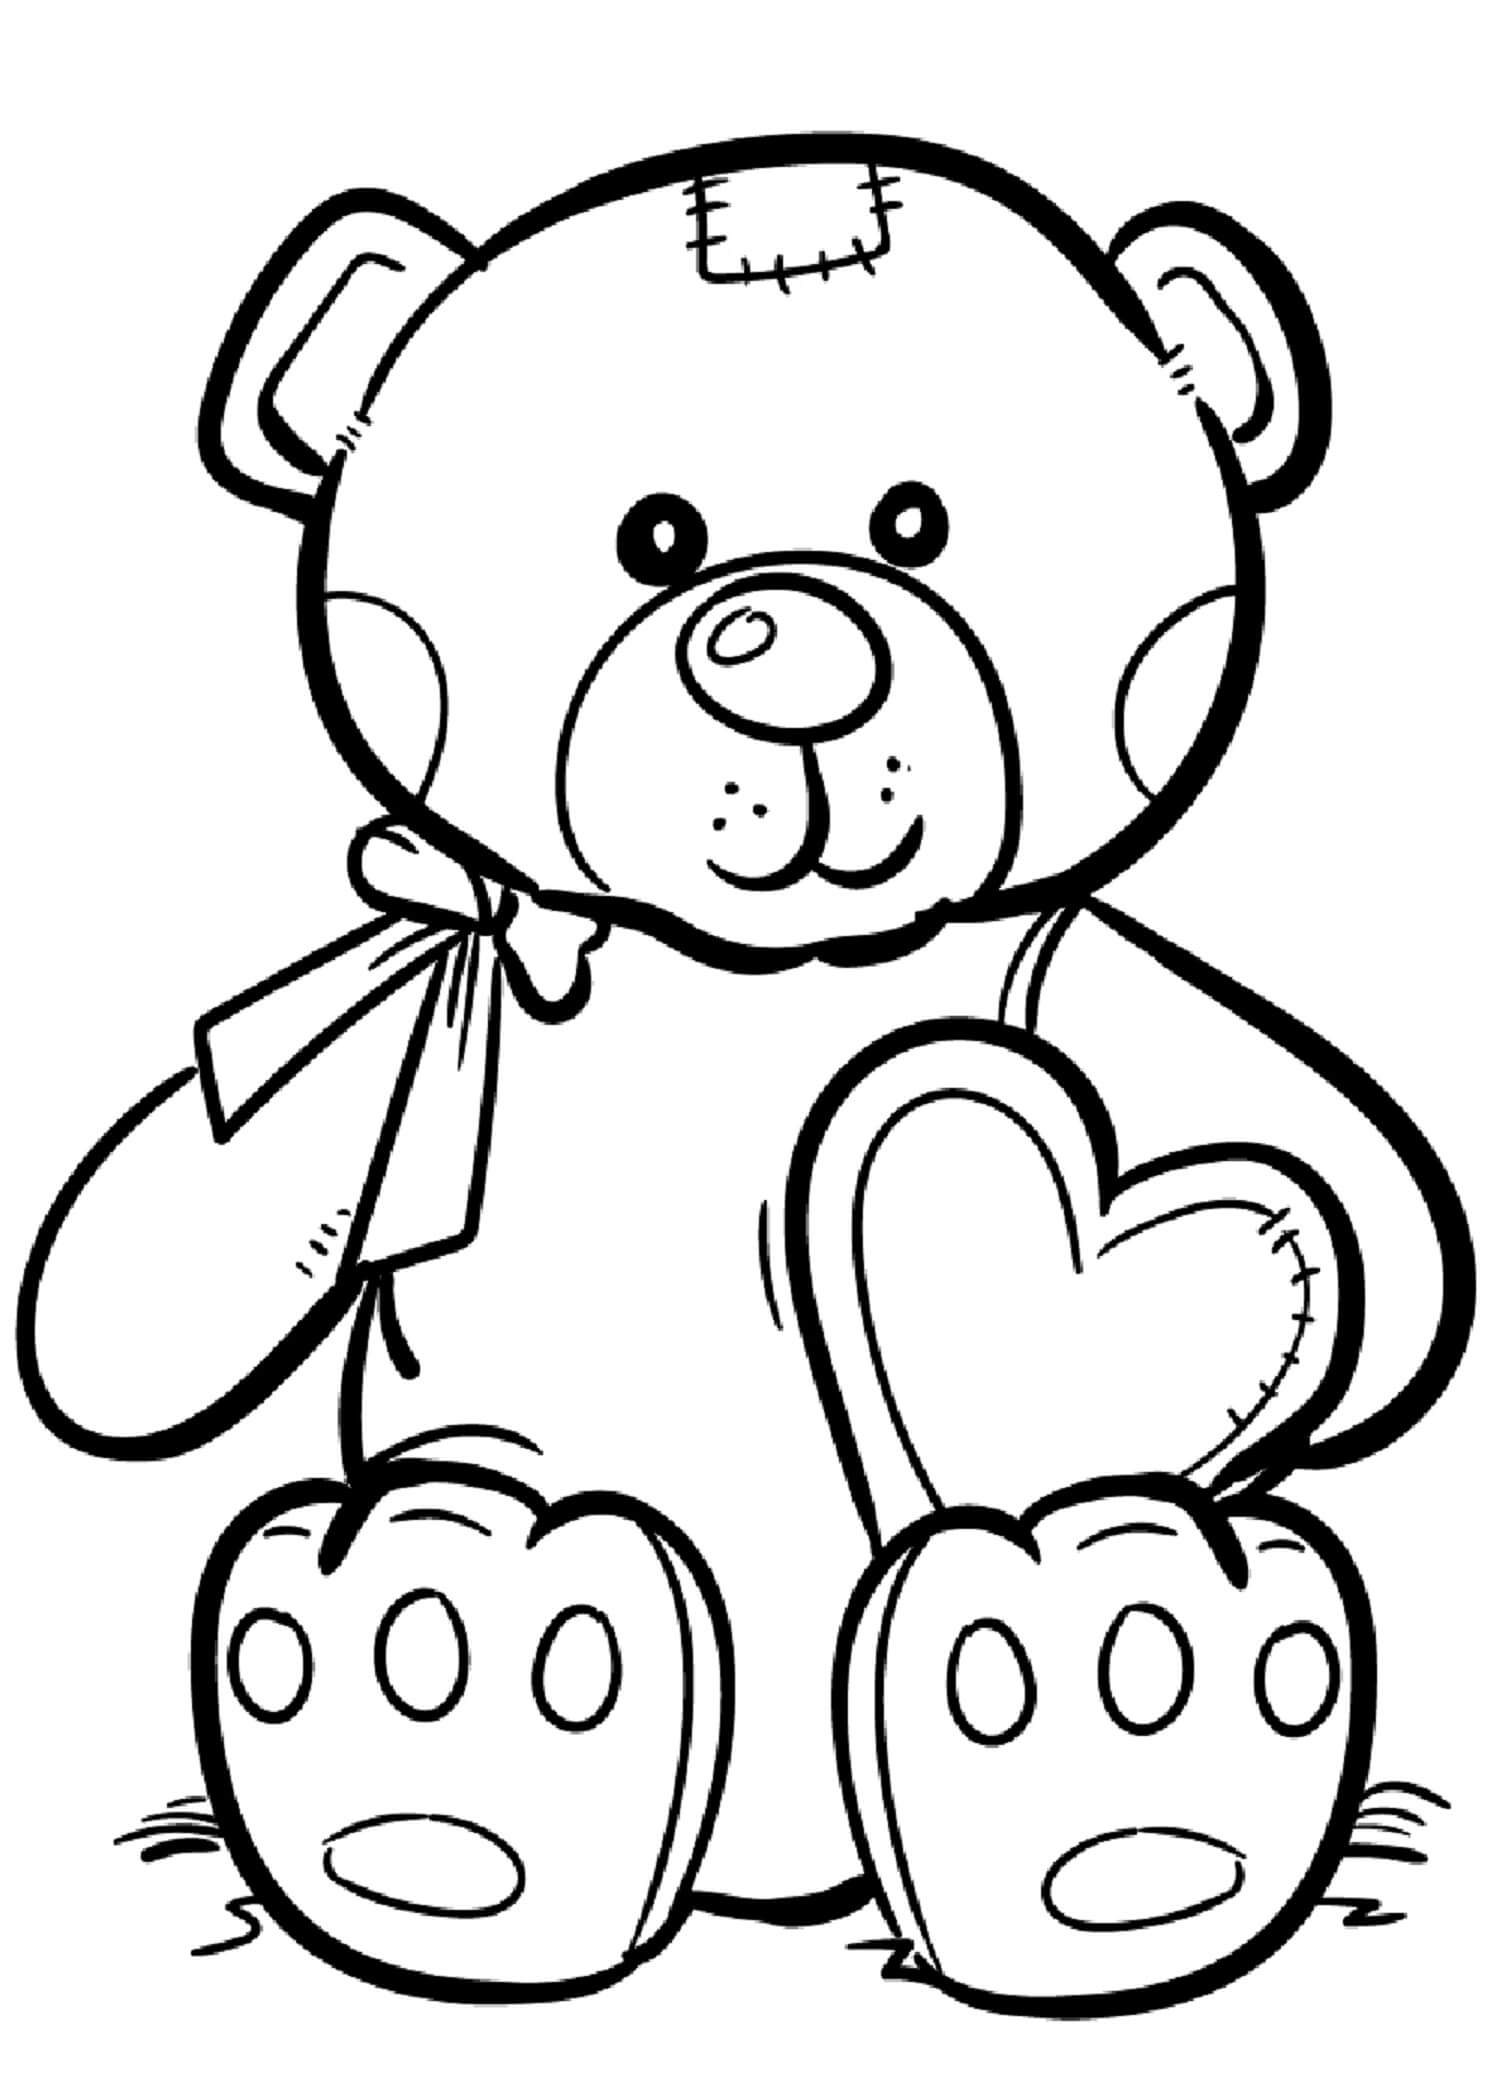 Teddy Bear Heart